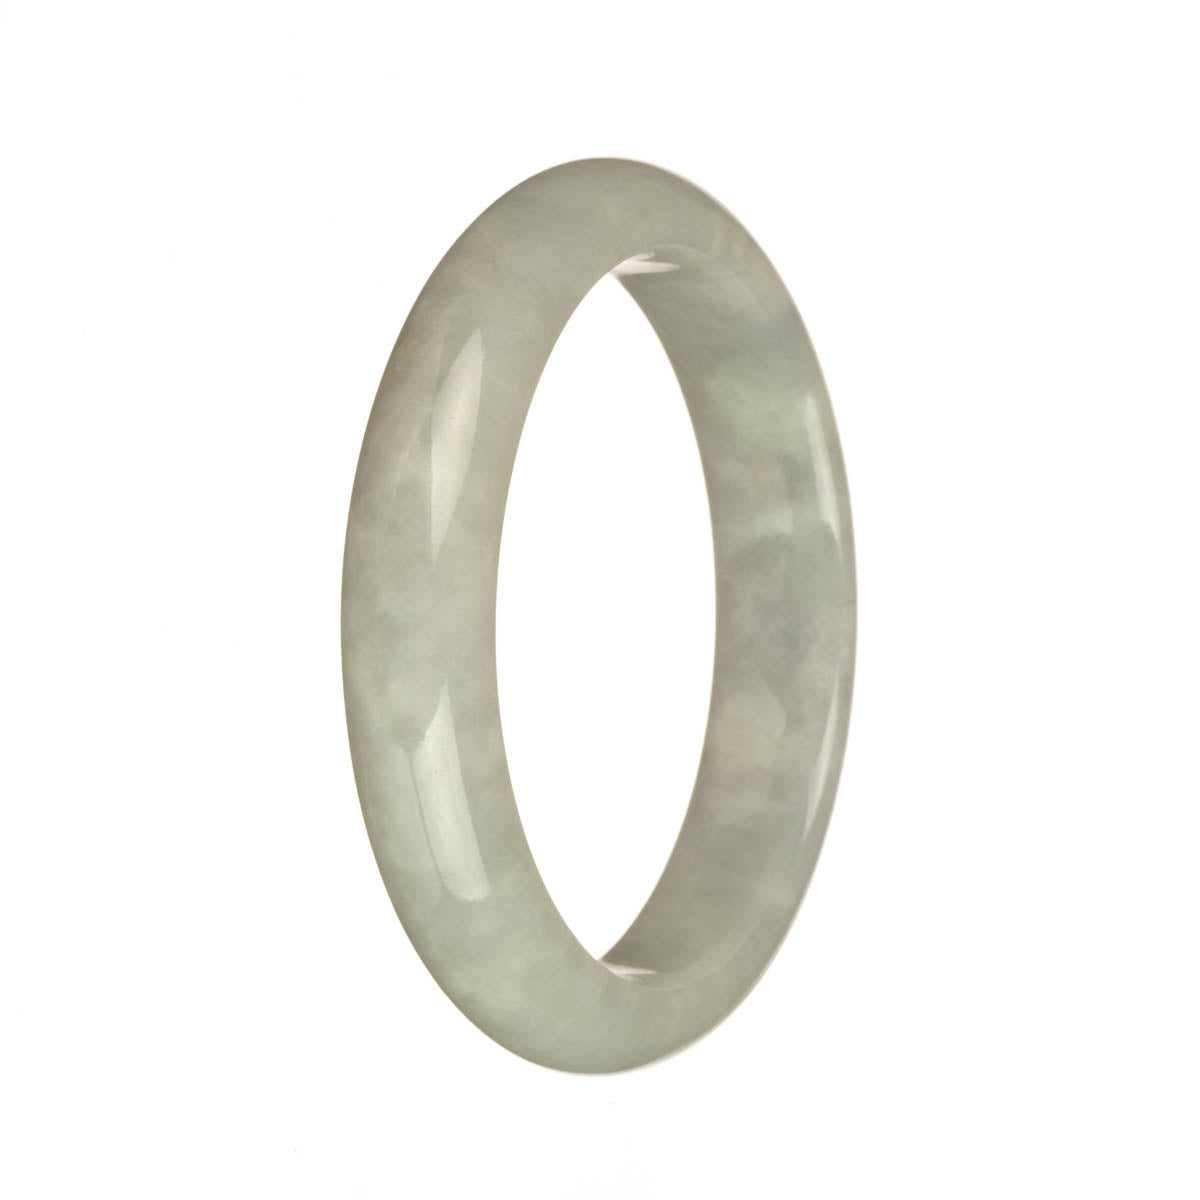 56.6mm Greyish White Jade Bangle Bracelet